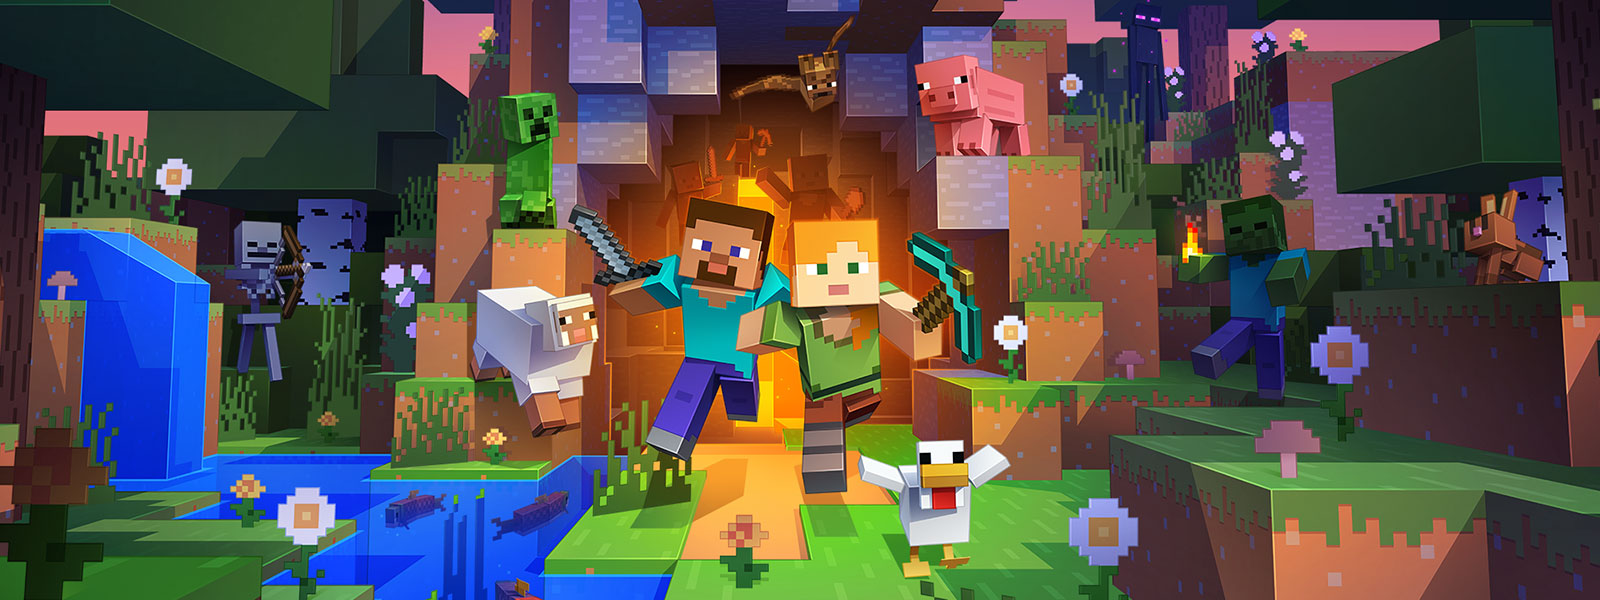 Två karaktärer kommer ut ur en tunnel tillsammans med många varelser från Minecraft-världen